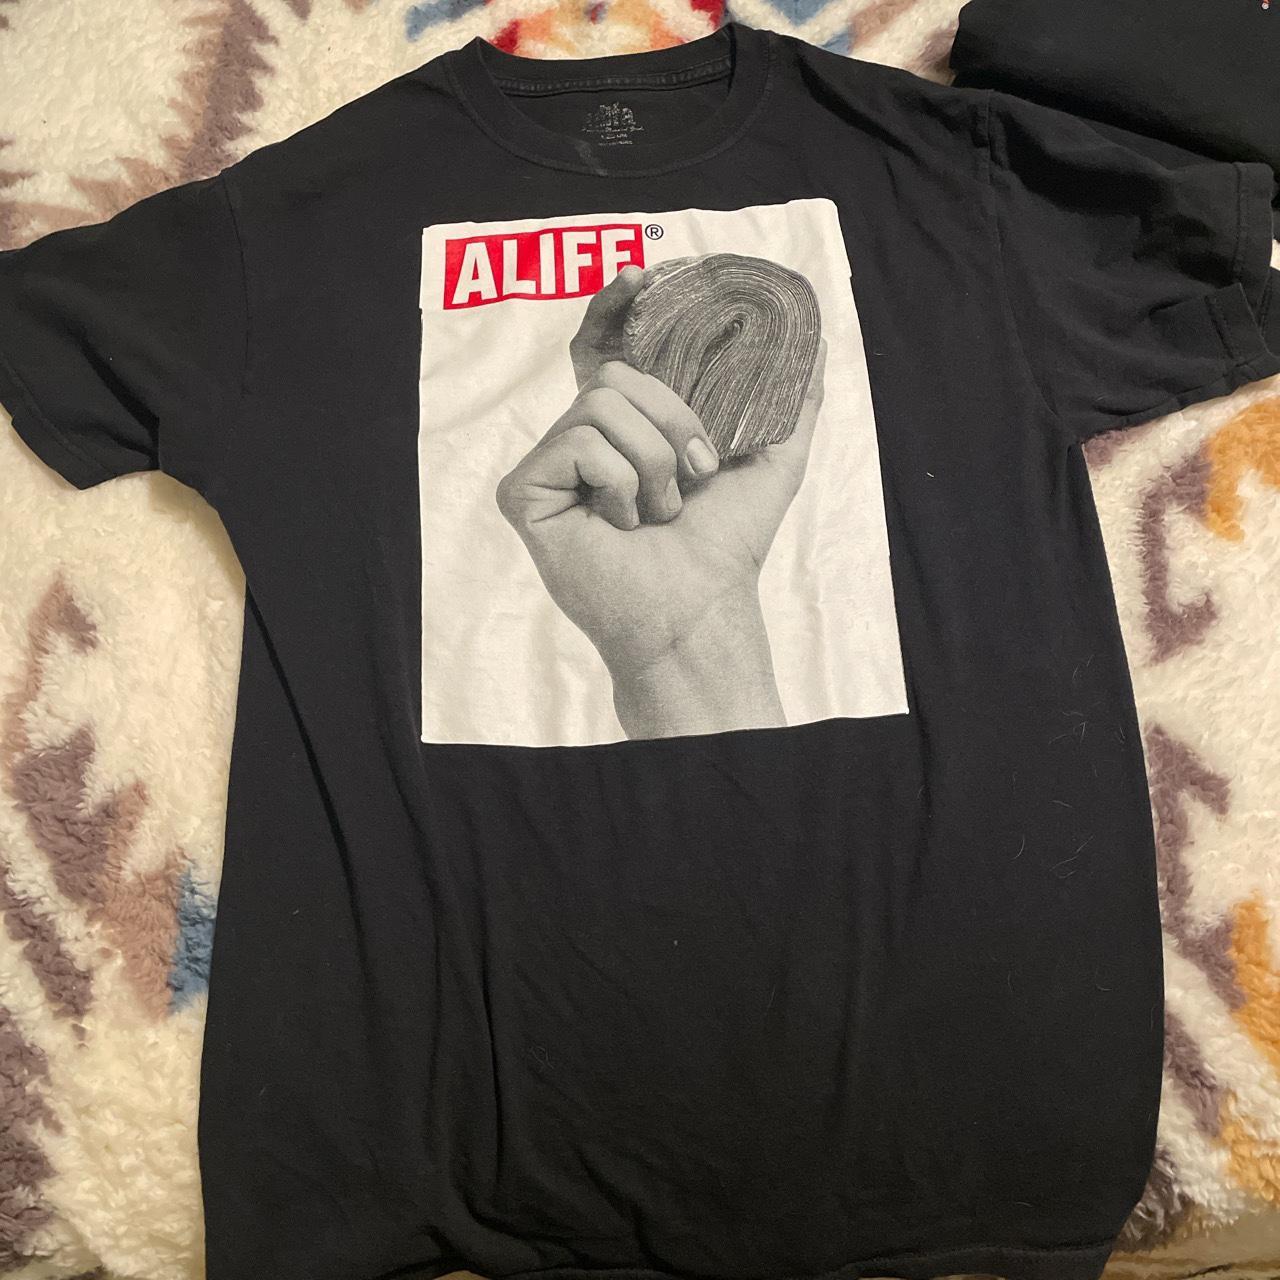 Alife Men's Black T-shirt